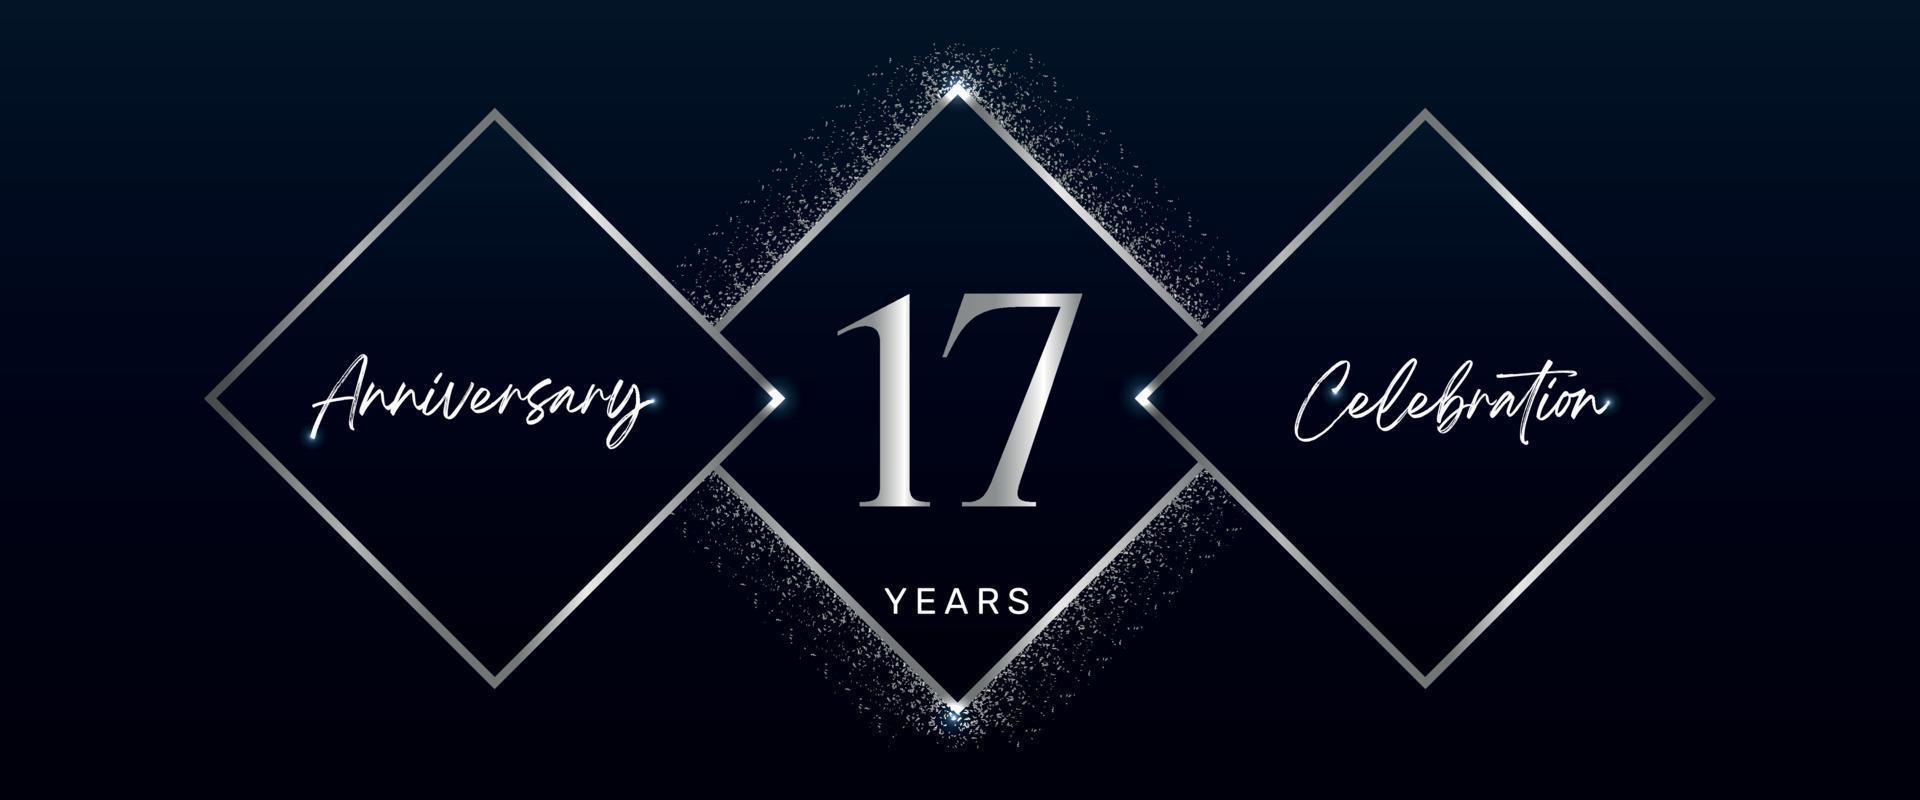 Logotipo de celebración de aniversario de 17 años. diseño vectorial para eventos de celebración de aniversario, fiesta de cumpleaños, tarjeta de felicitación, boda, tarjeta de invitación. vector de diseño de plantilla de aniversario de 17 años